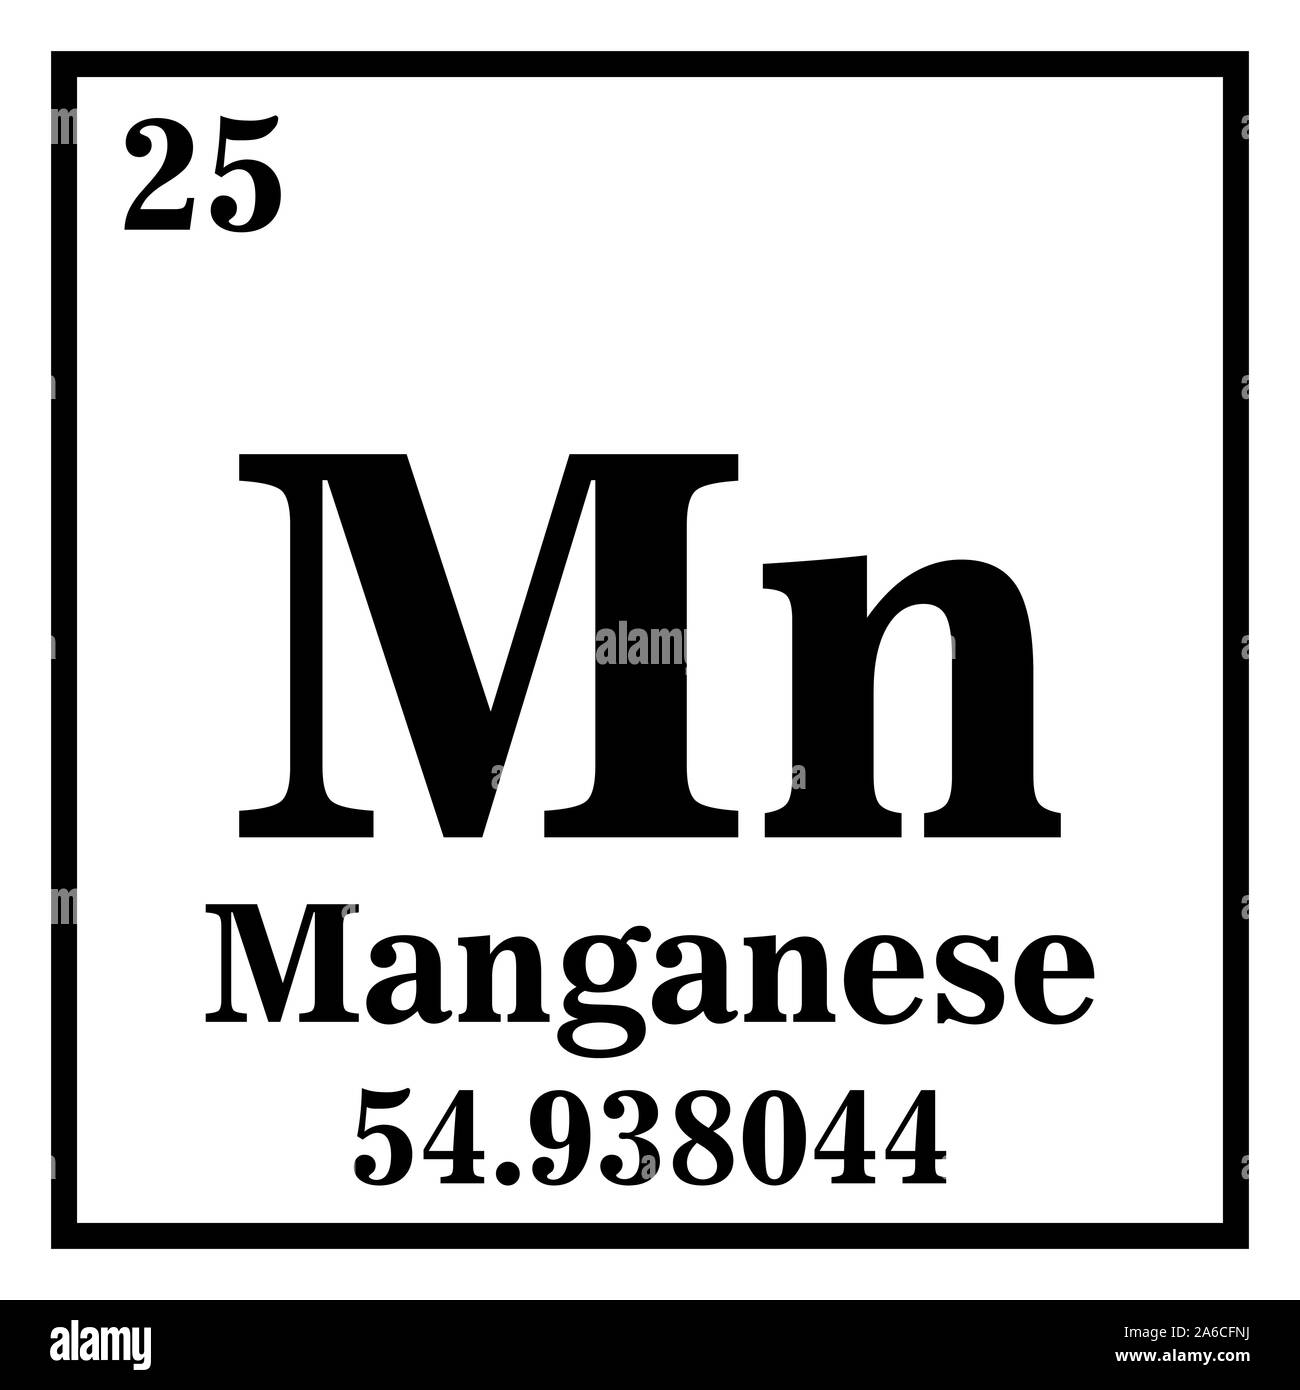 Tableau periodique manganèse Banque de photographies et d'images à haute  résolution - Alamy